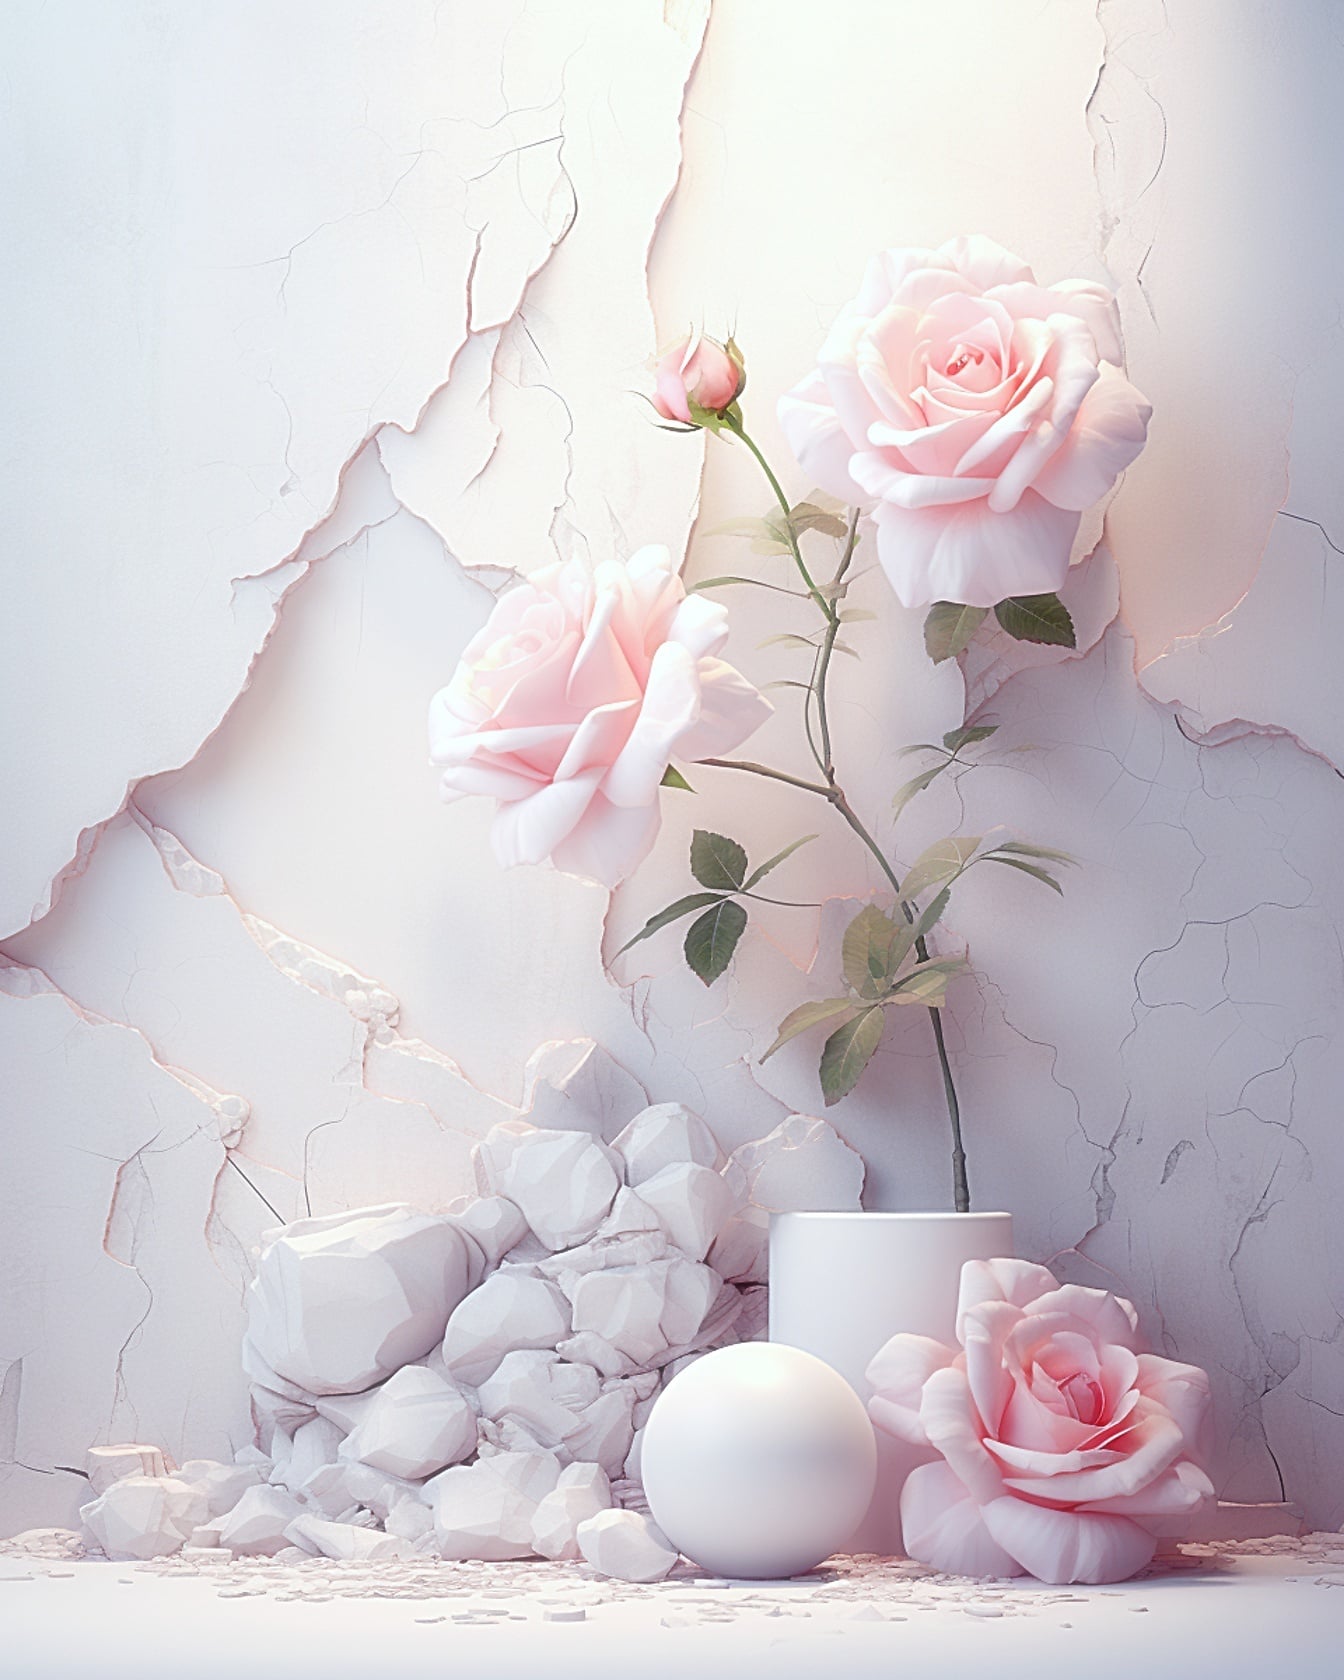 3D компьютер сгенерировал розовые розы в вазе белым шаром гниения